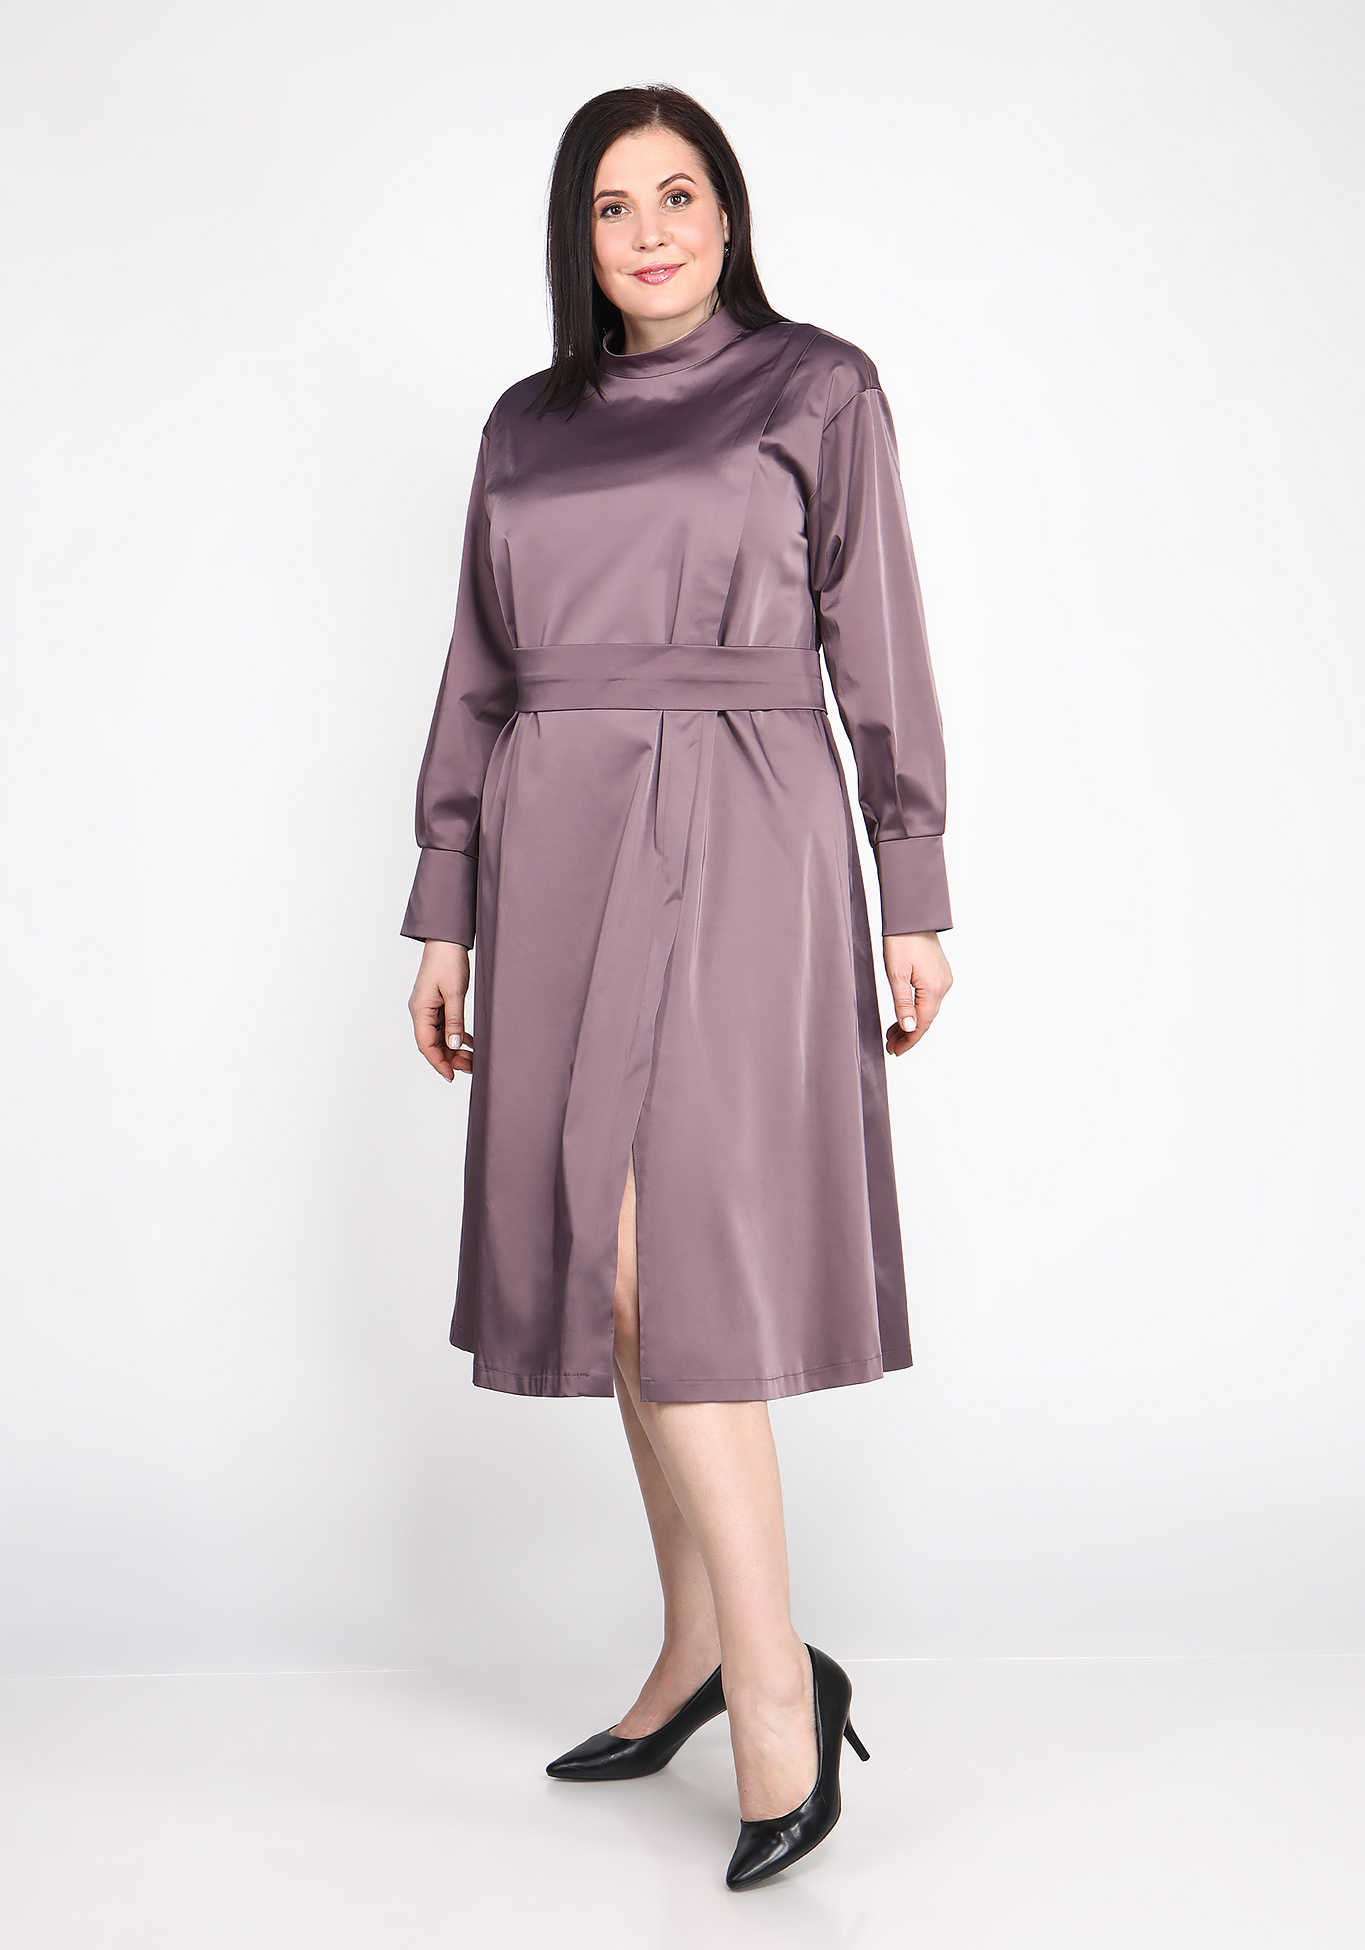 Платье с поясом на пуговицах Sarah Morenberg, размер 48, цвет тёмно-лиловый - фото 6